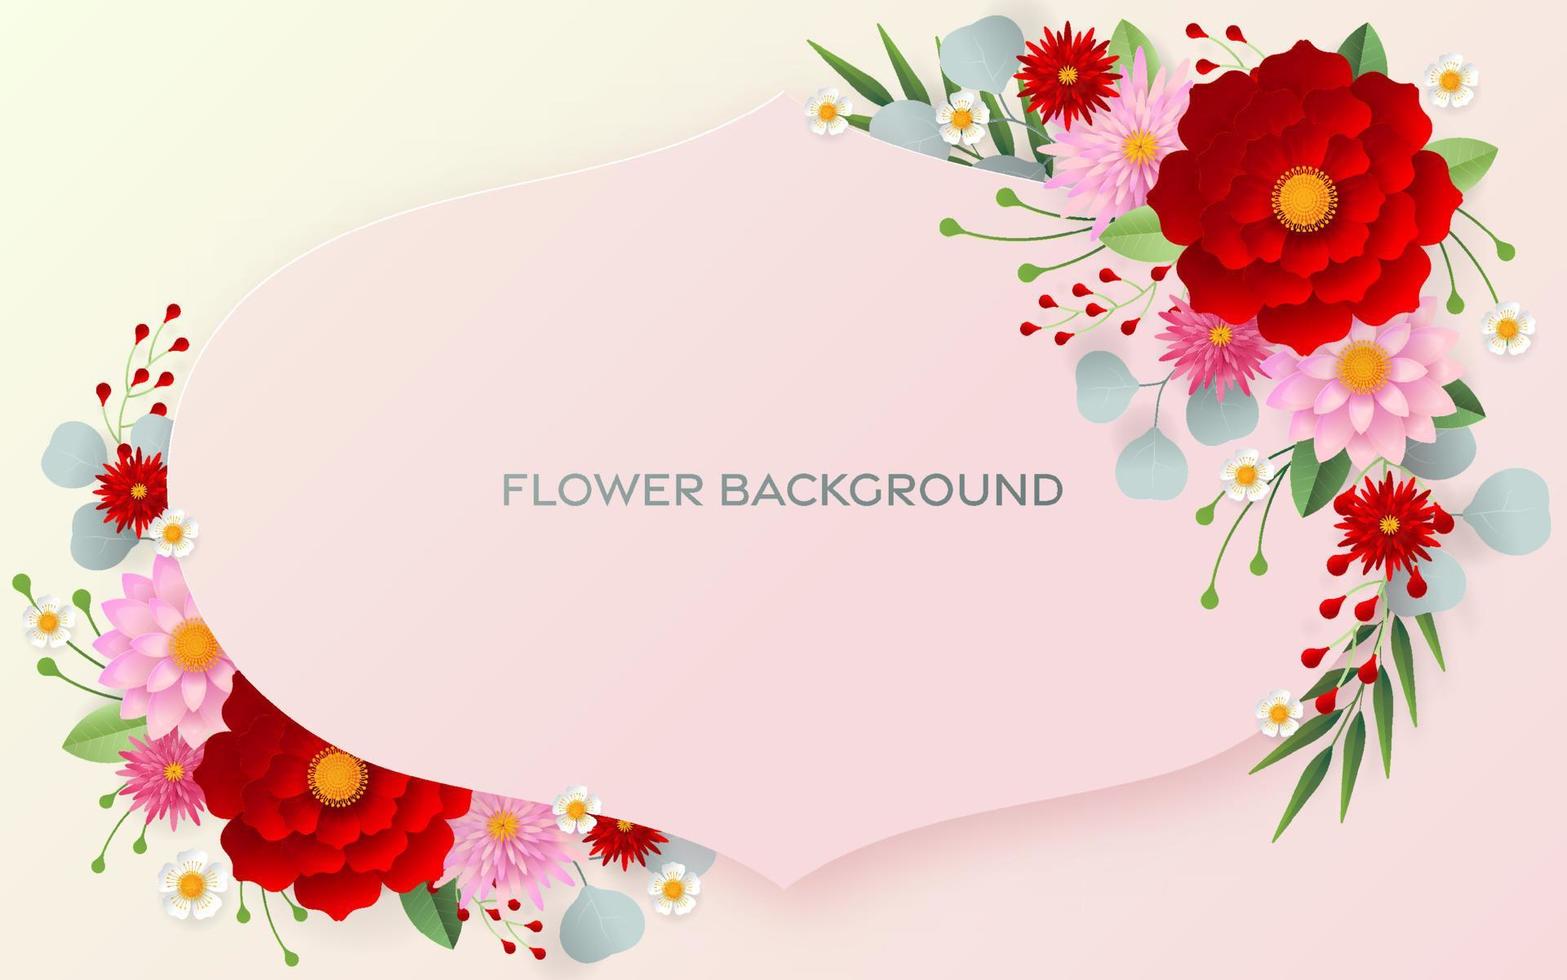 bröllopsinbjudan kortmall med blommor papperssnitt vektor